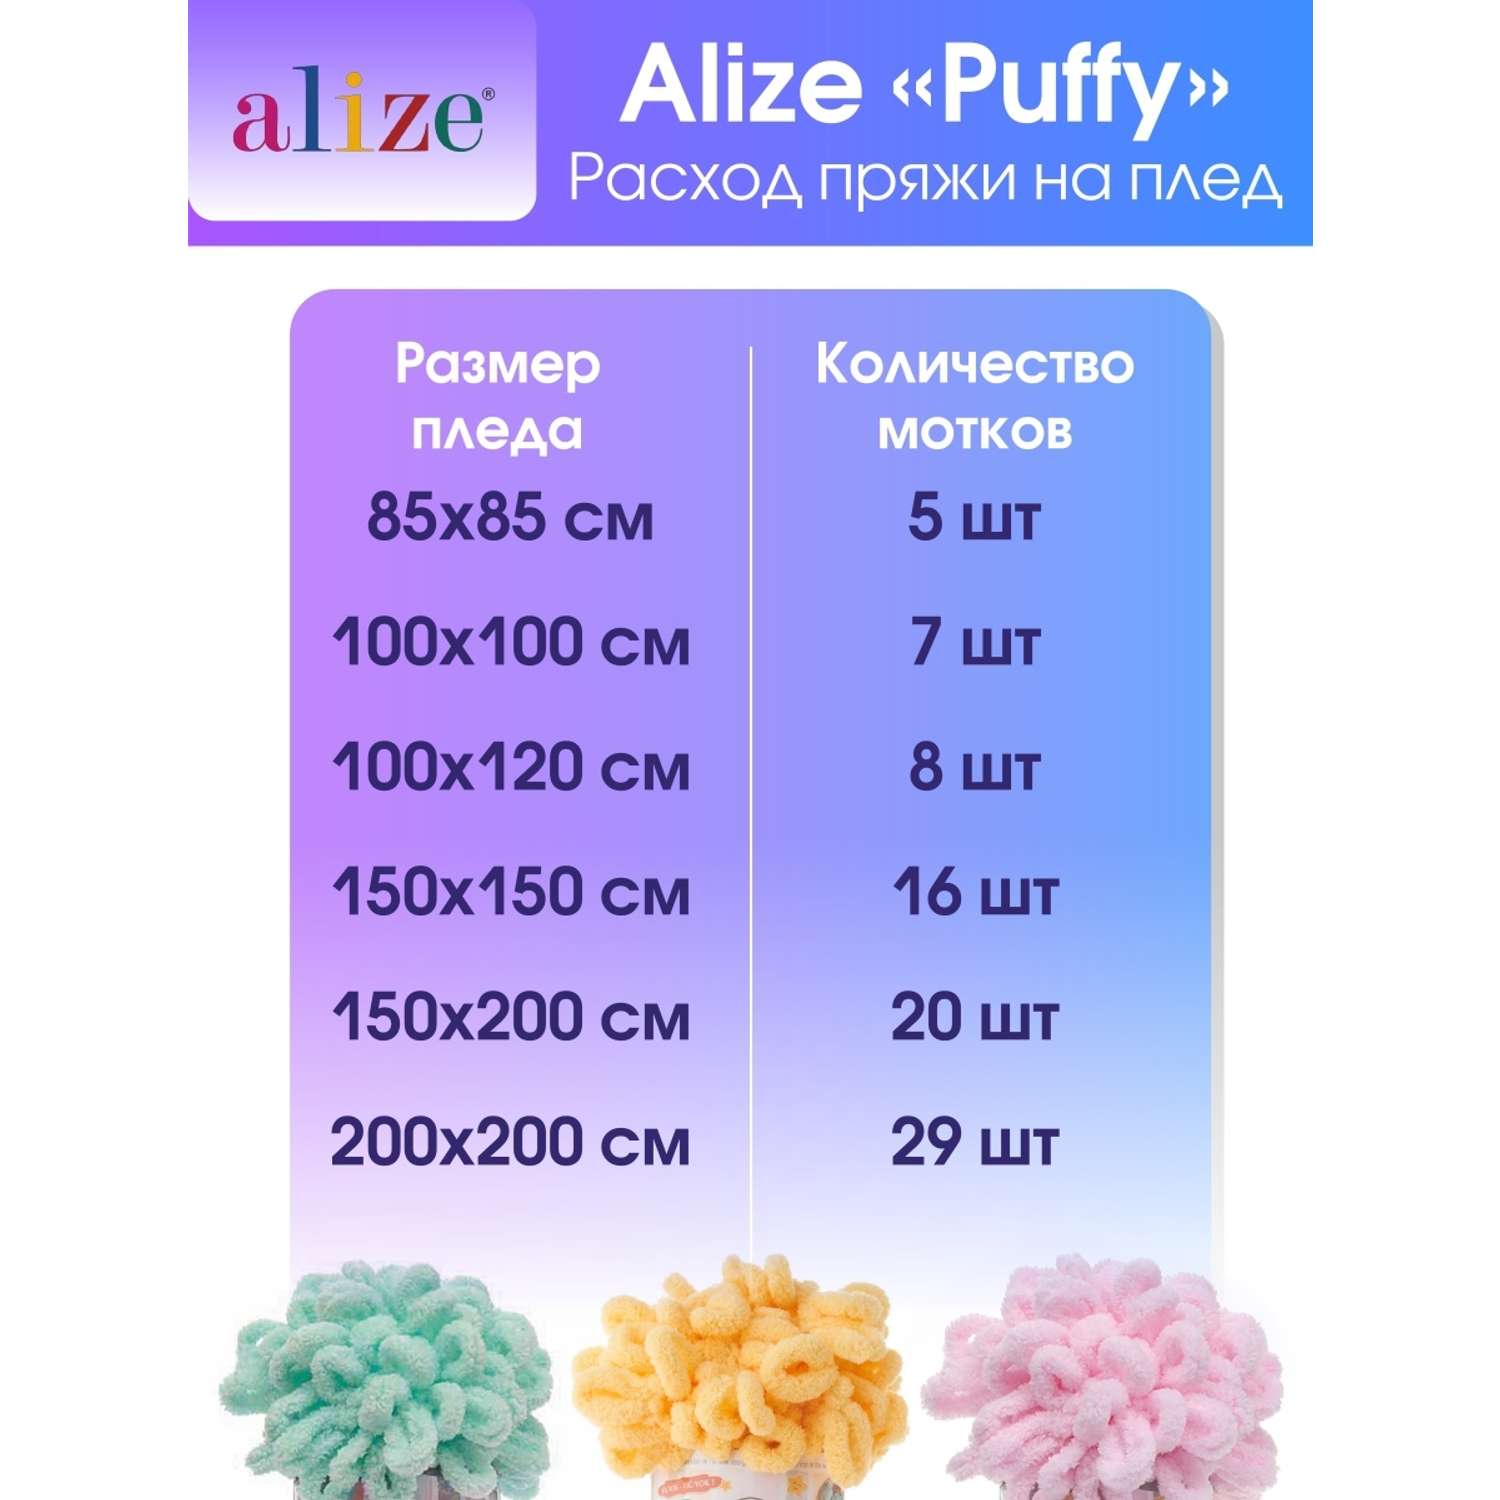 Пряжа для вязания Alize puffy 100 г 9 м микрополиэстер фантазийная плюшевая 717 Тигр 5 мотков - фото 7